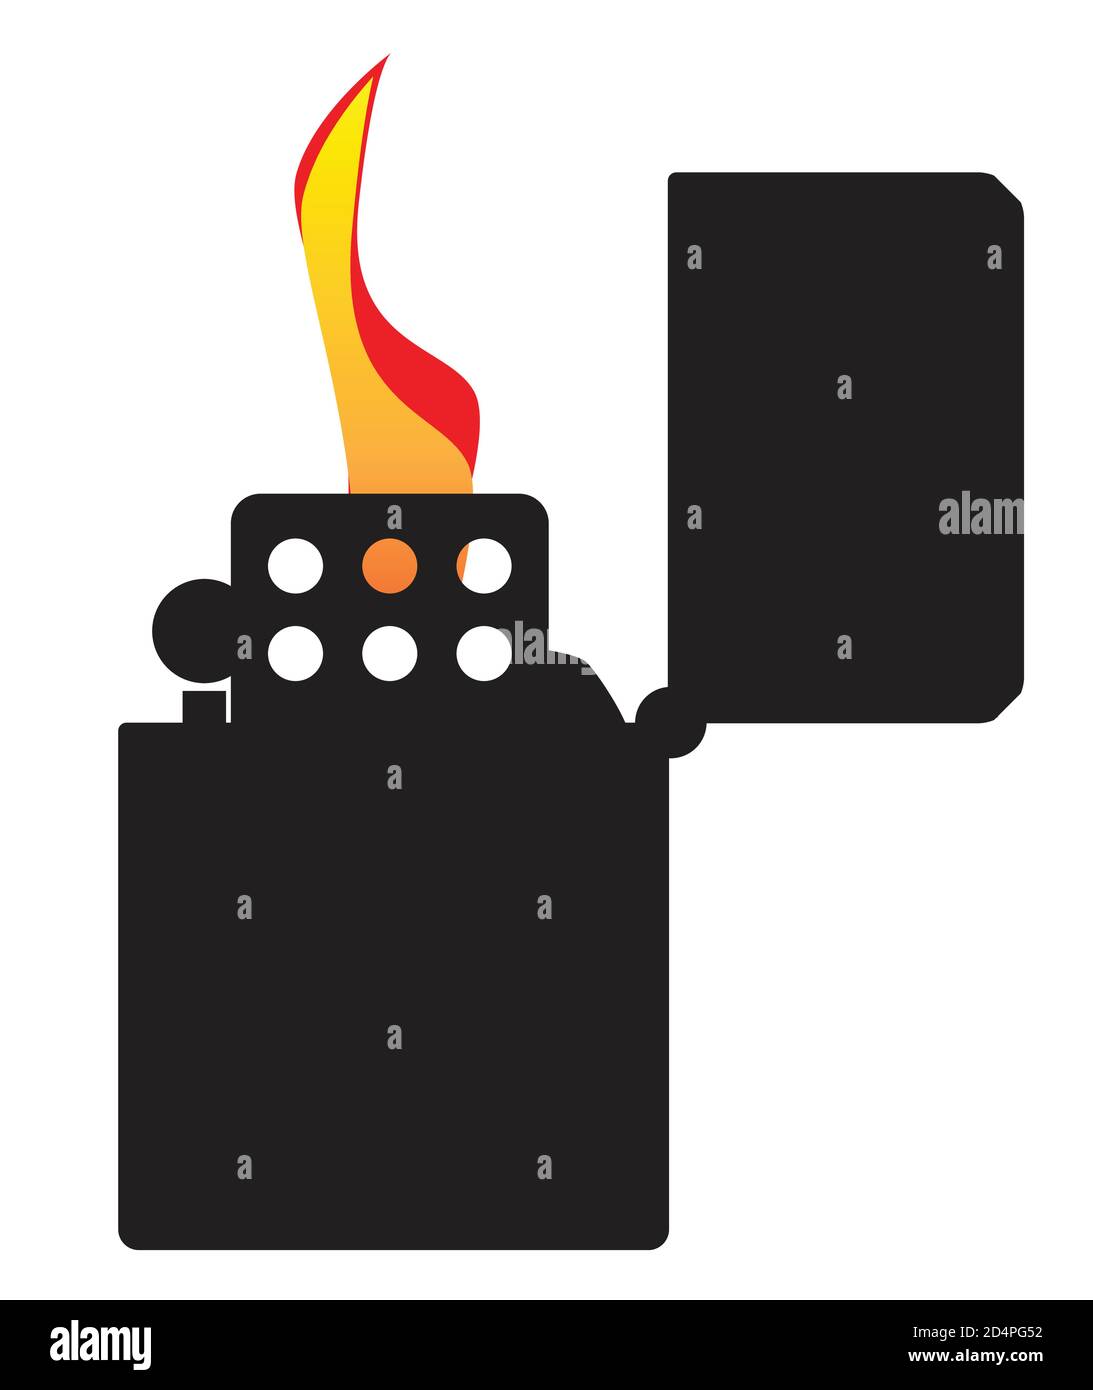 Feuerzeug öffnen Stock-Vektorgrafiken kaufen - Alamy